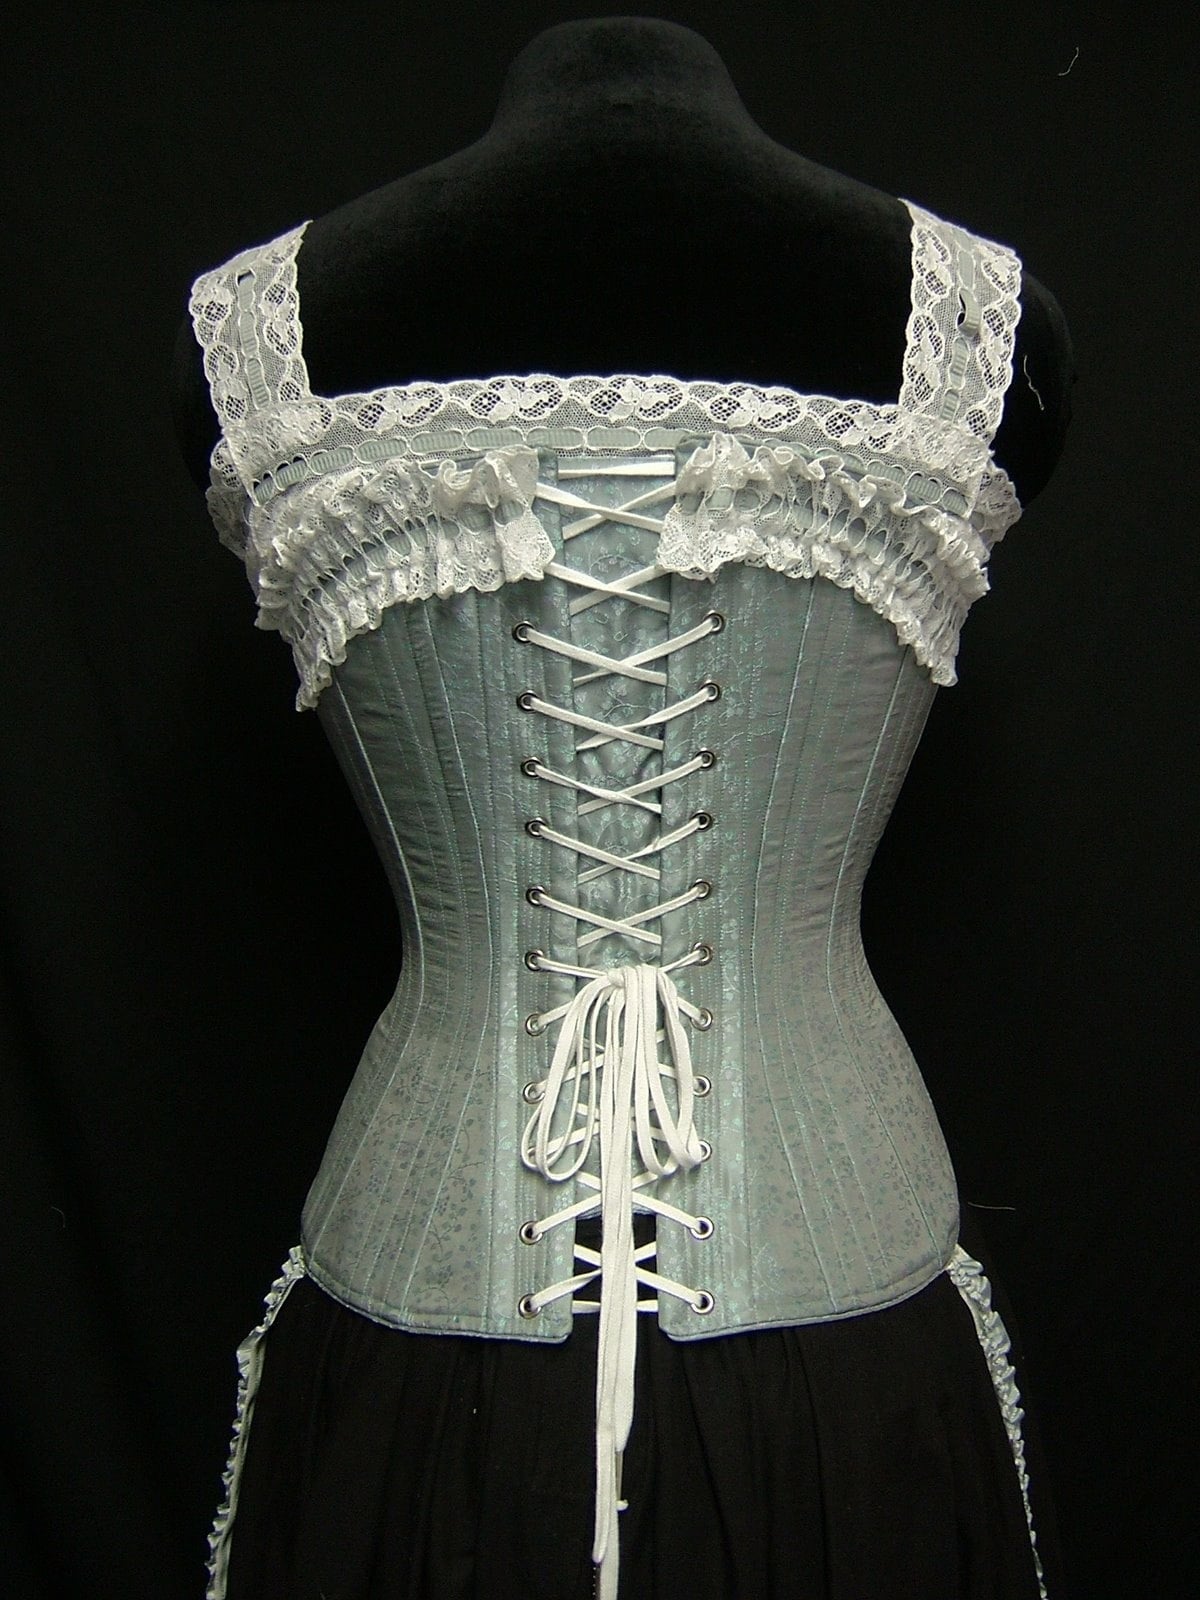 Victorian Corsets  Victorian corset, Corsets and bustiers, Vintage lace